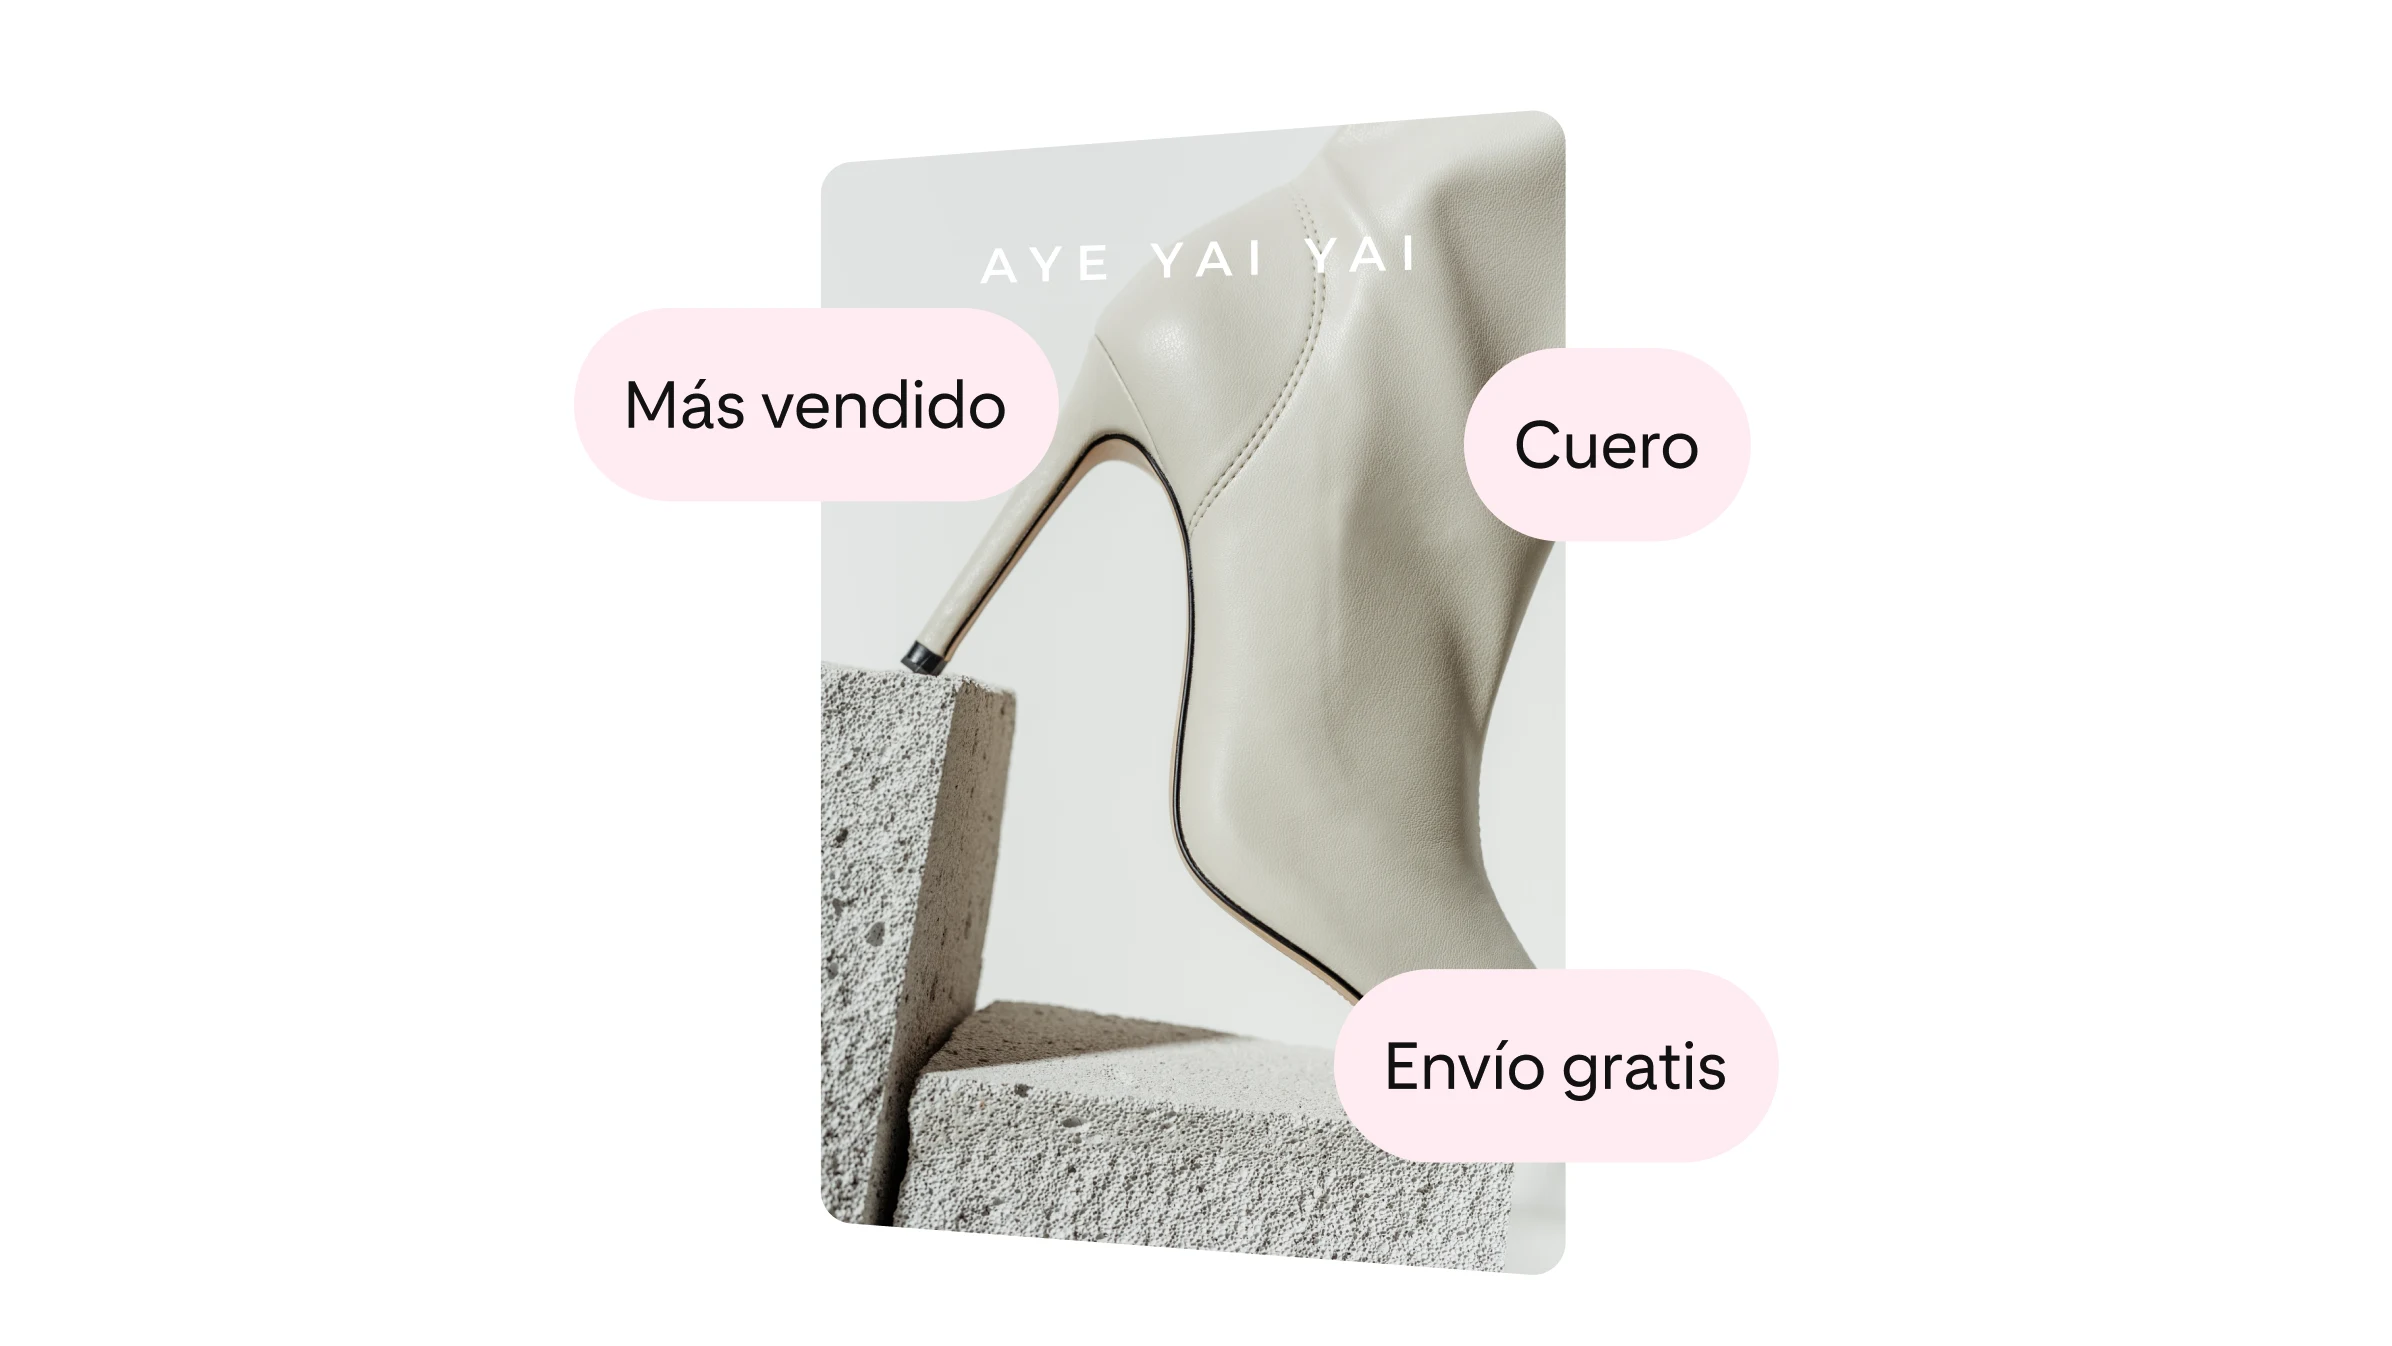 AYE YAI YAI promociona sus botas de piel blancas. Un texto indica que el producto está entre los más vendidos y que el envío es gratis.